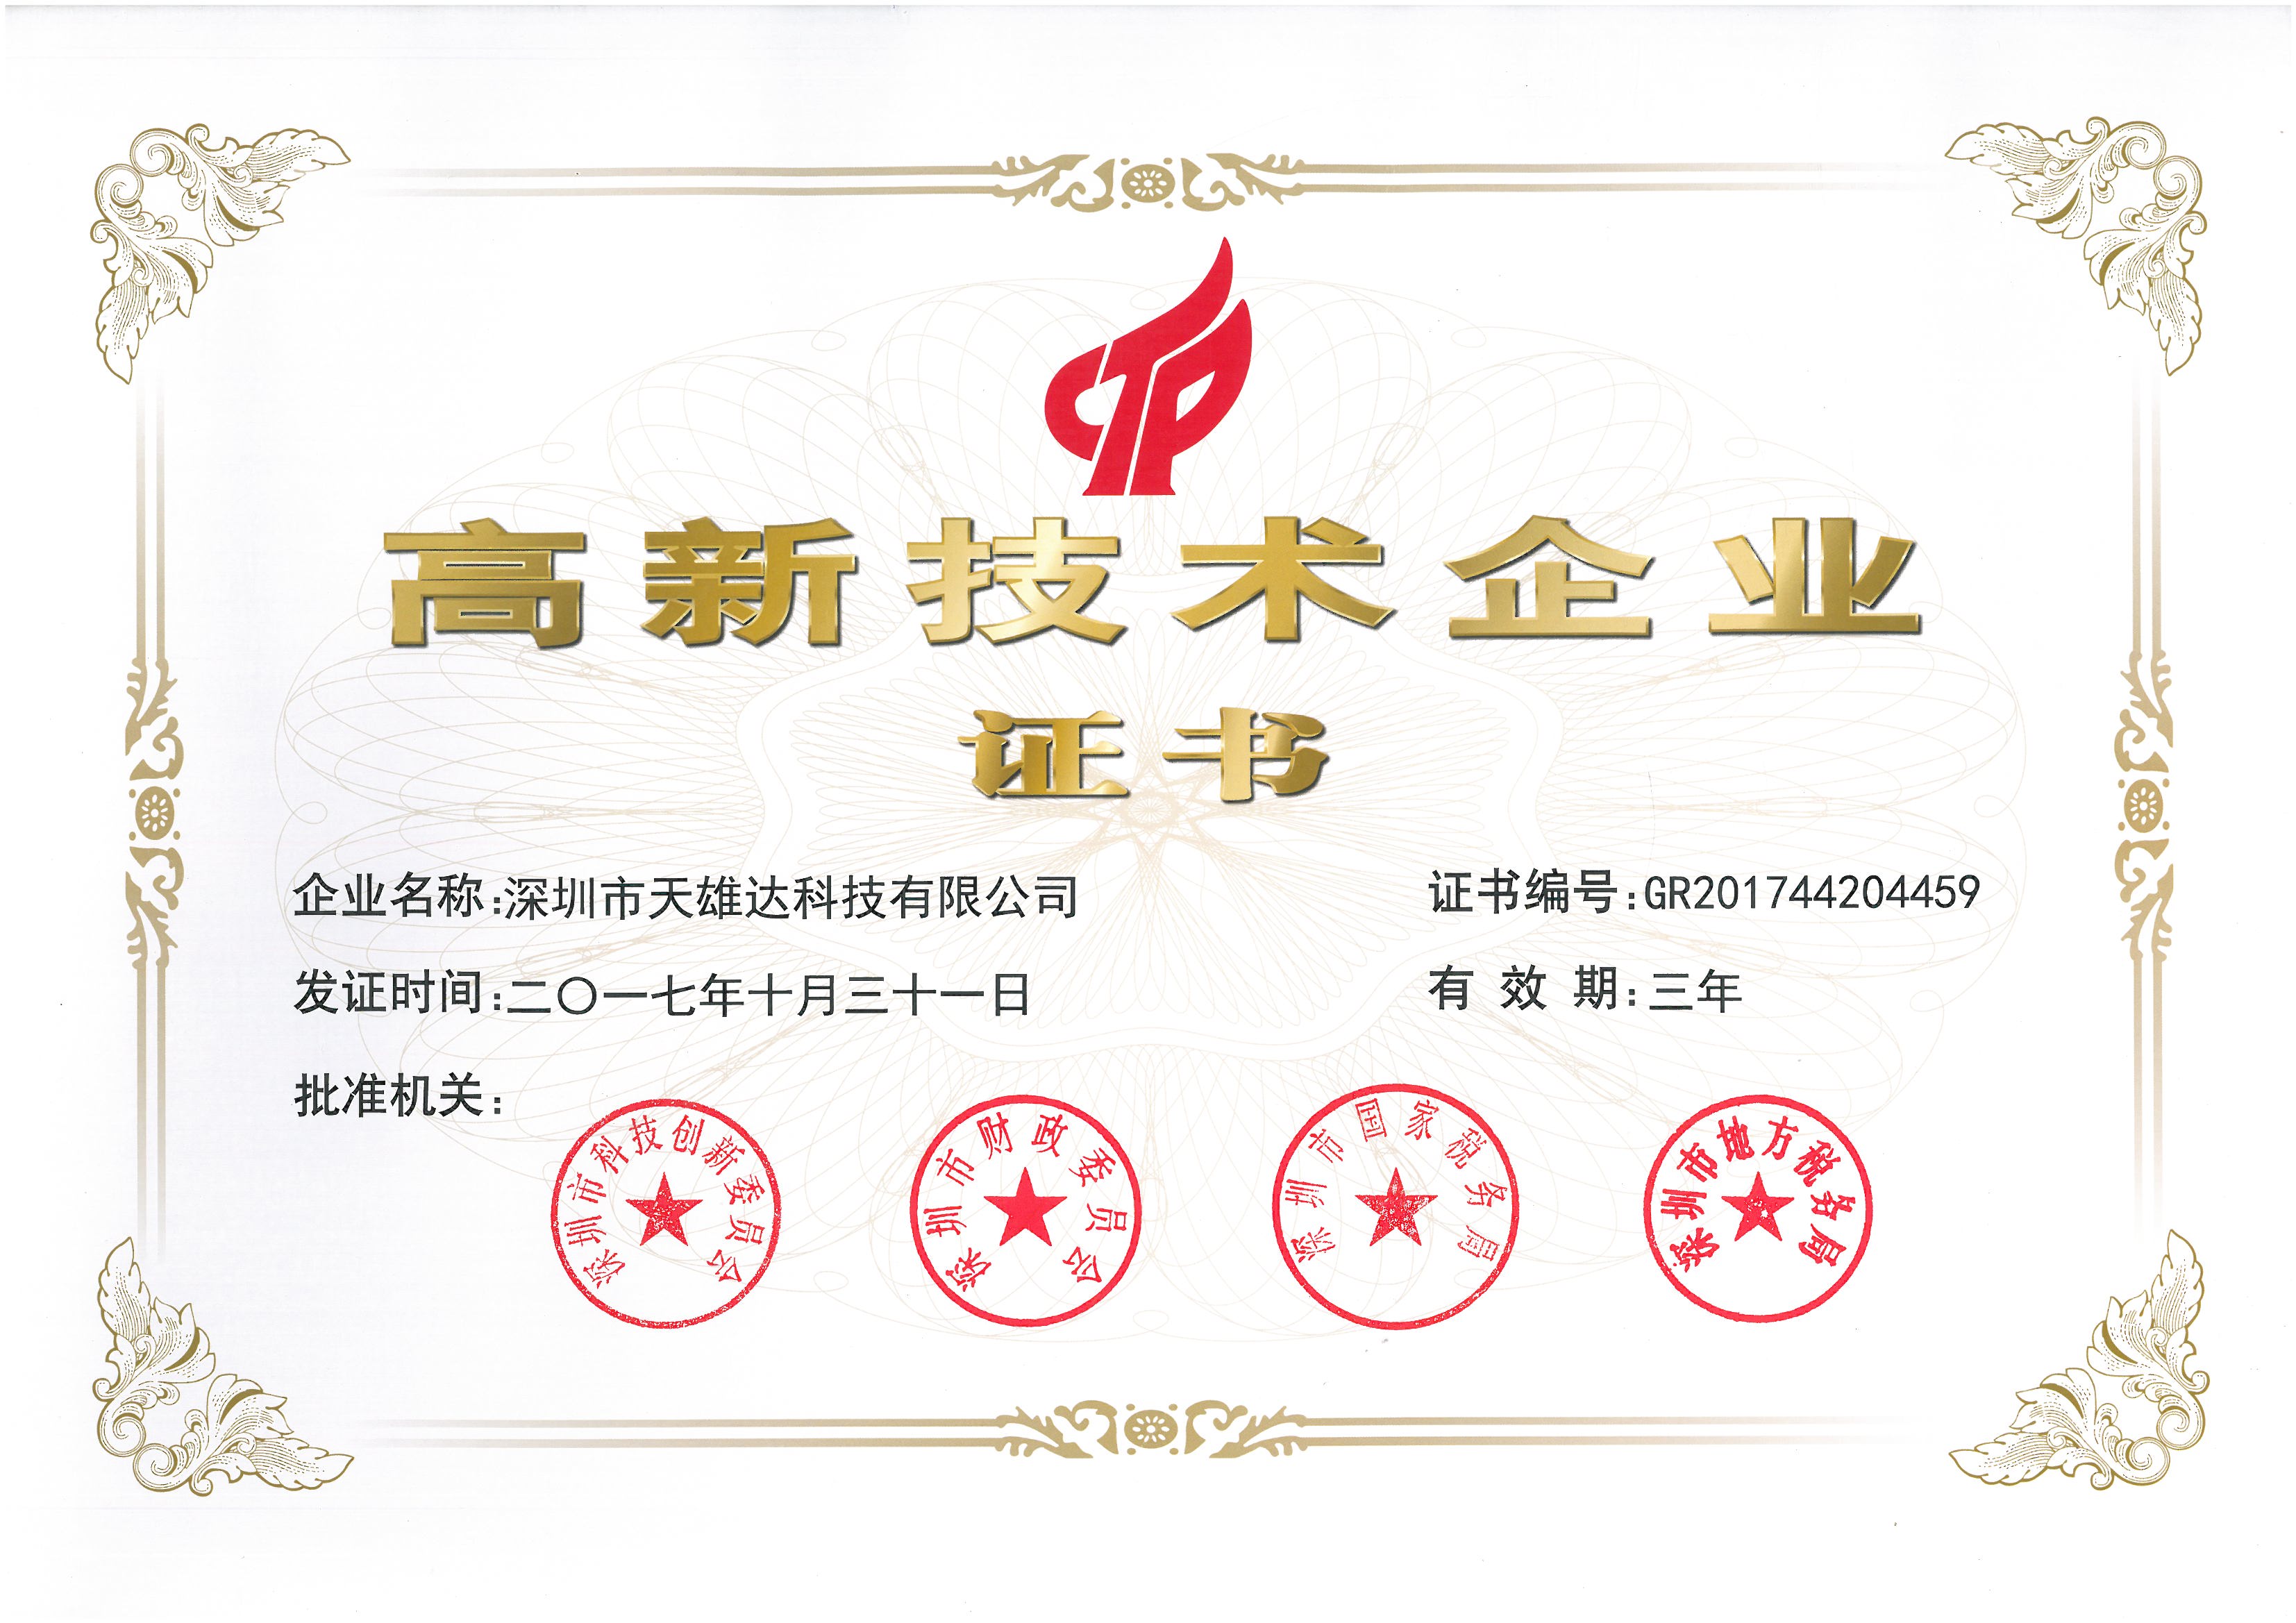 重要通知 元竞技游戏(中国)体育官方网站获得高新技术企业的称号